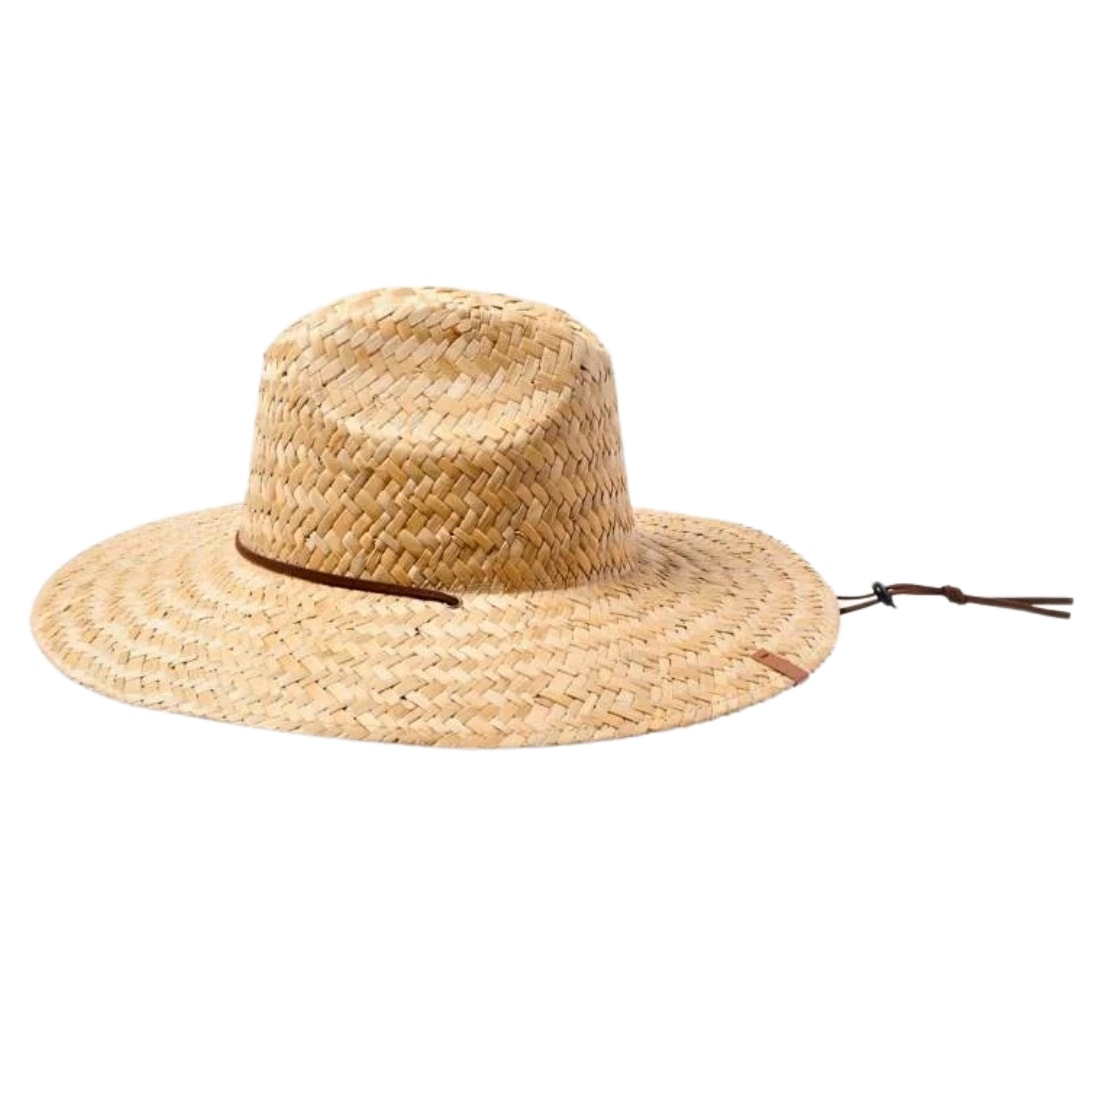 Brixton Bells II Sun Hat - Tan/Tan - Fedora/Trilby Hat by Brixton